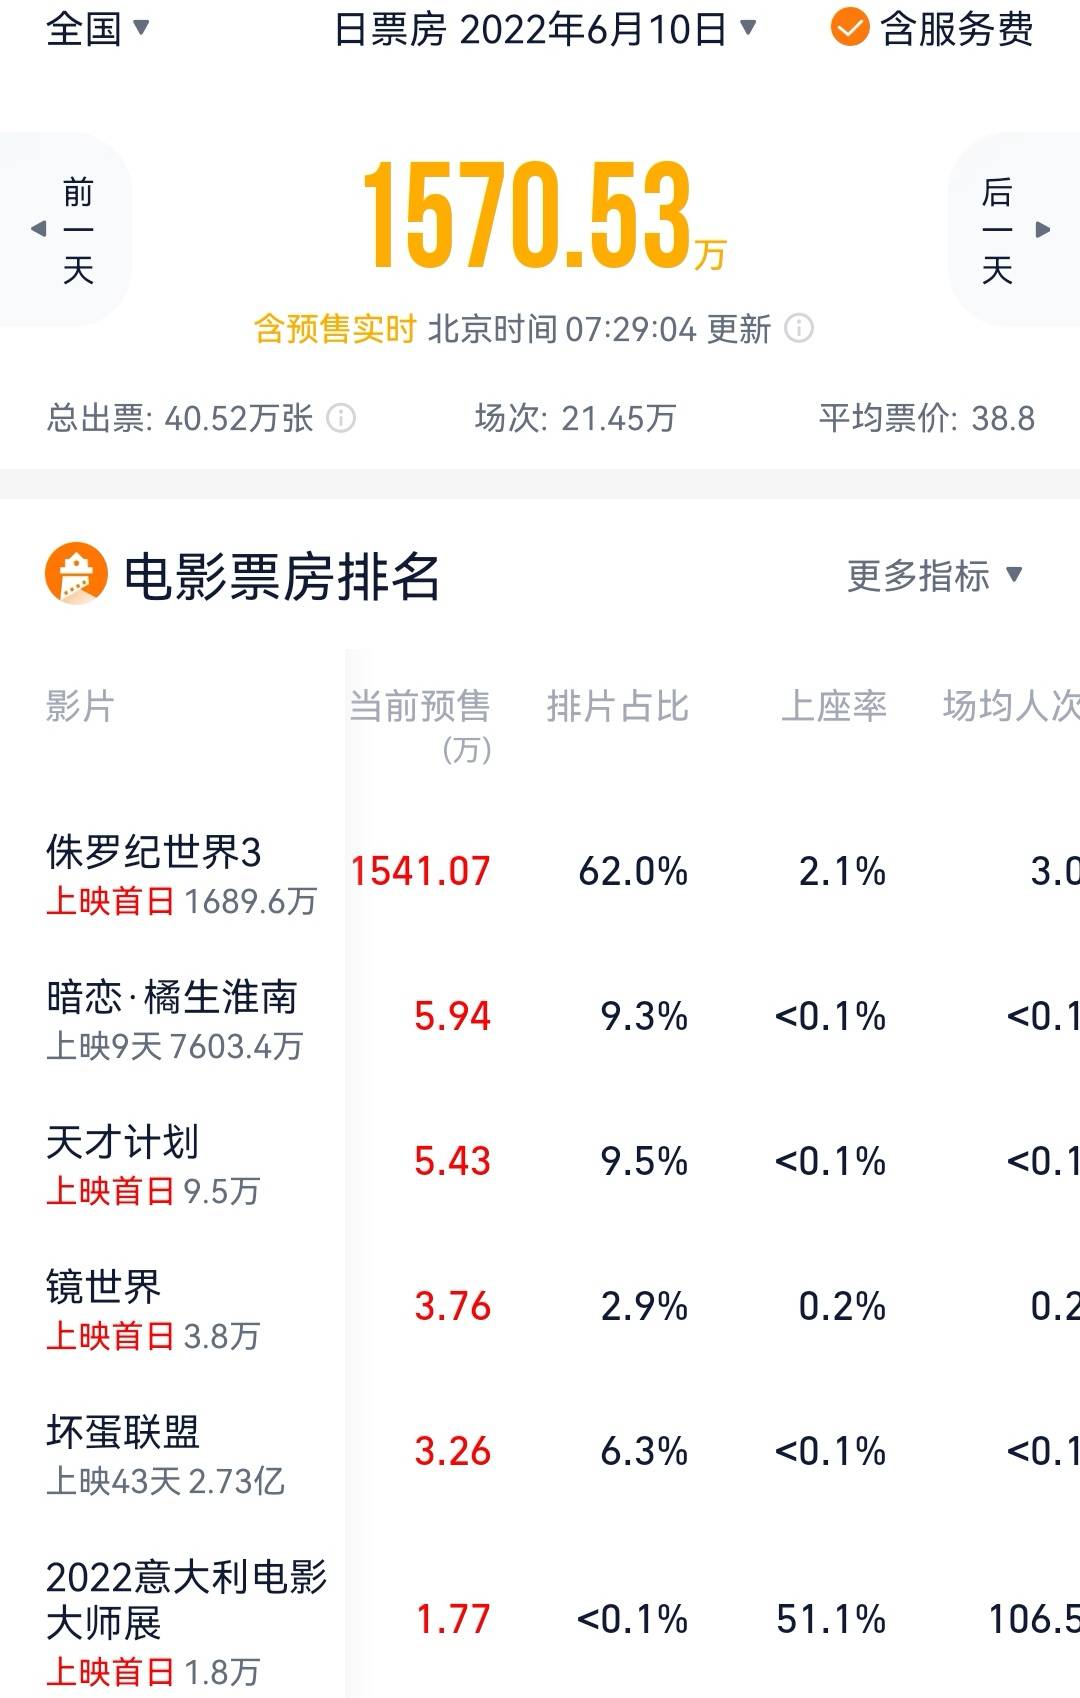 北京有158家影院已经复工 全市影院营业率达到64%